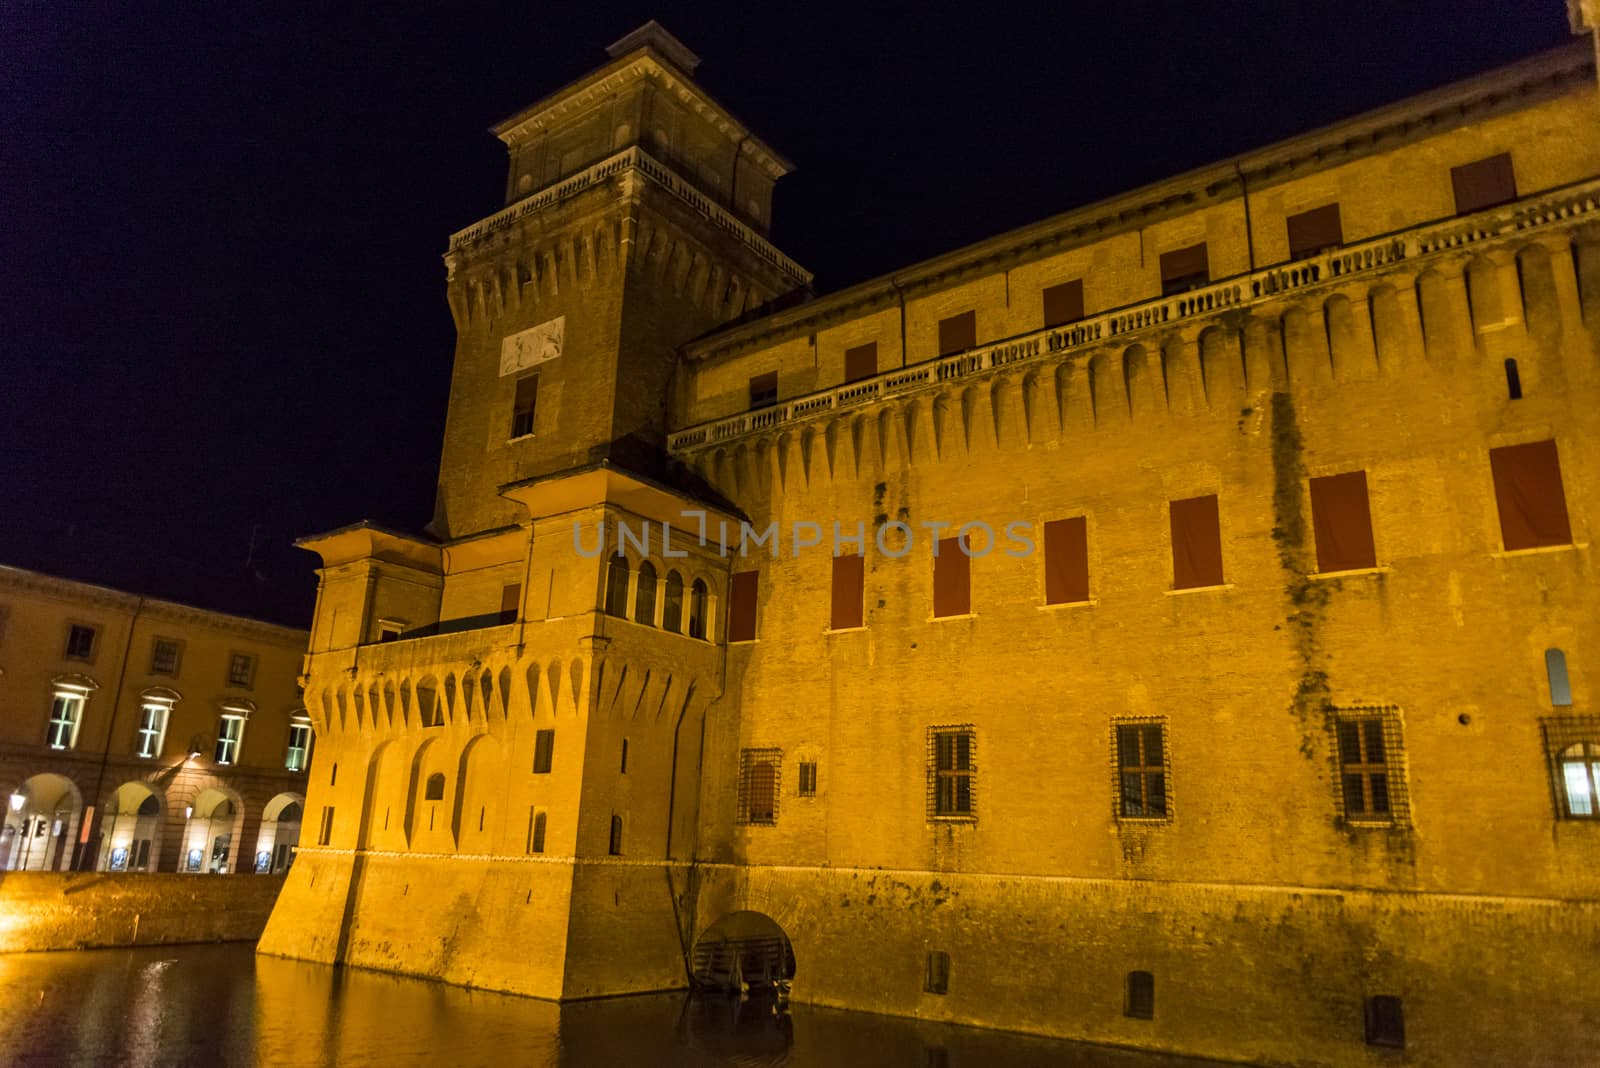 The Estense castle in Ferrara by edella